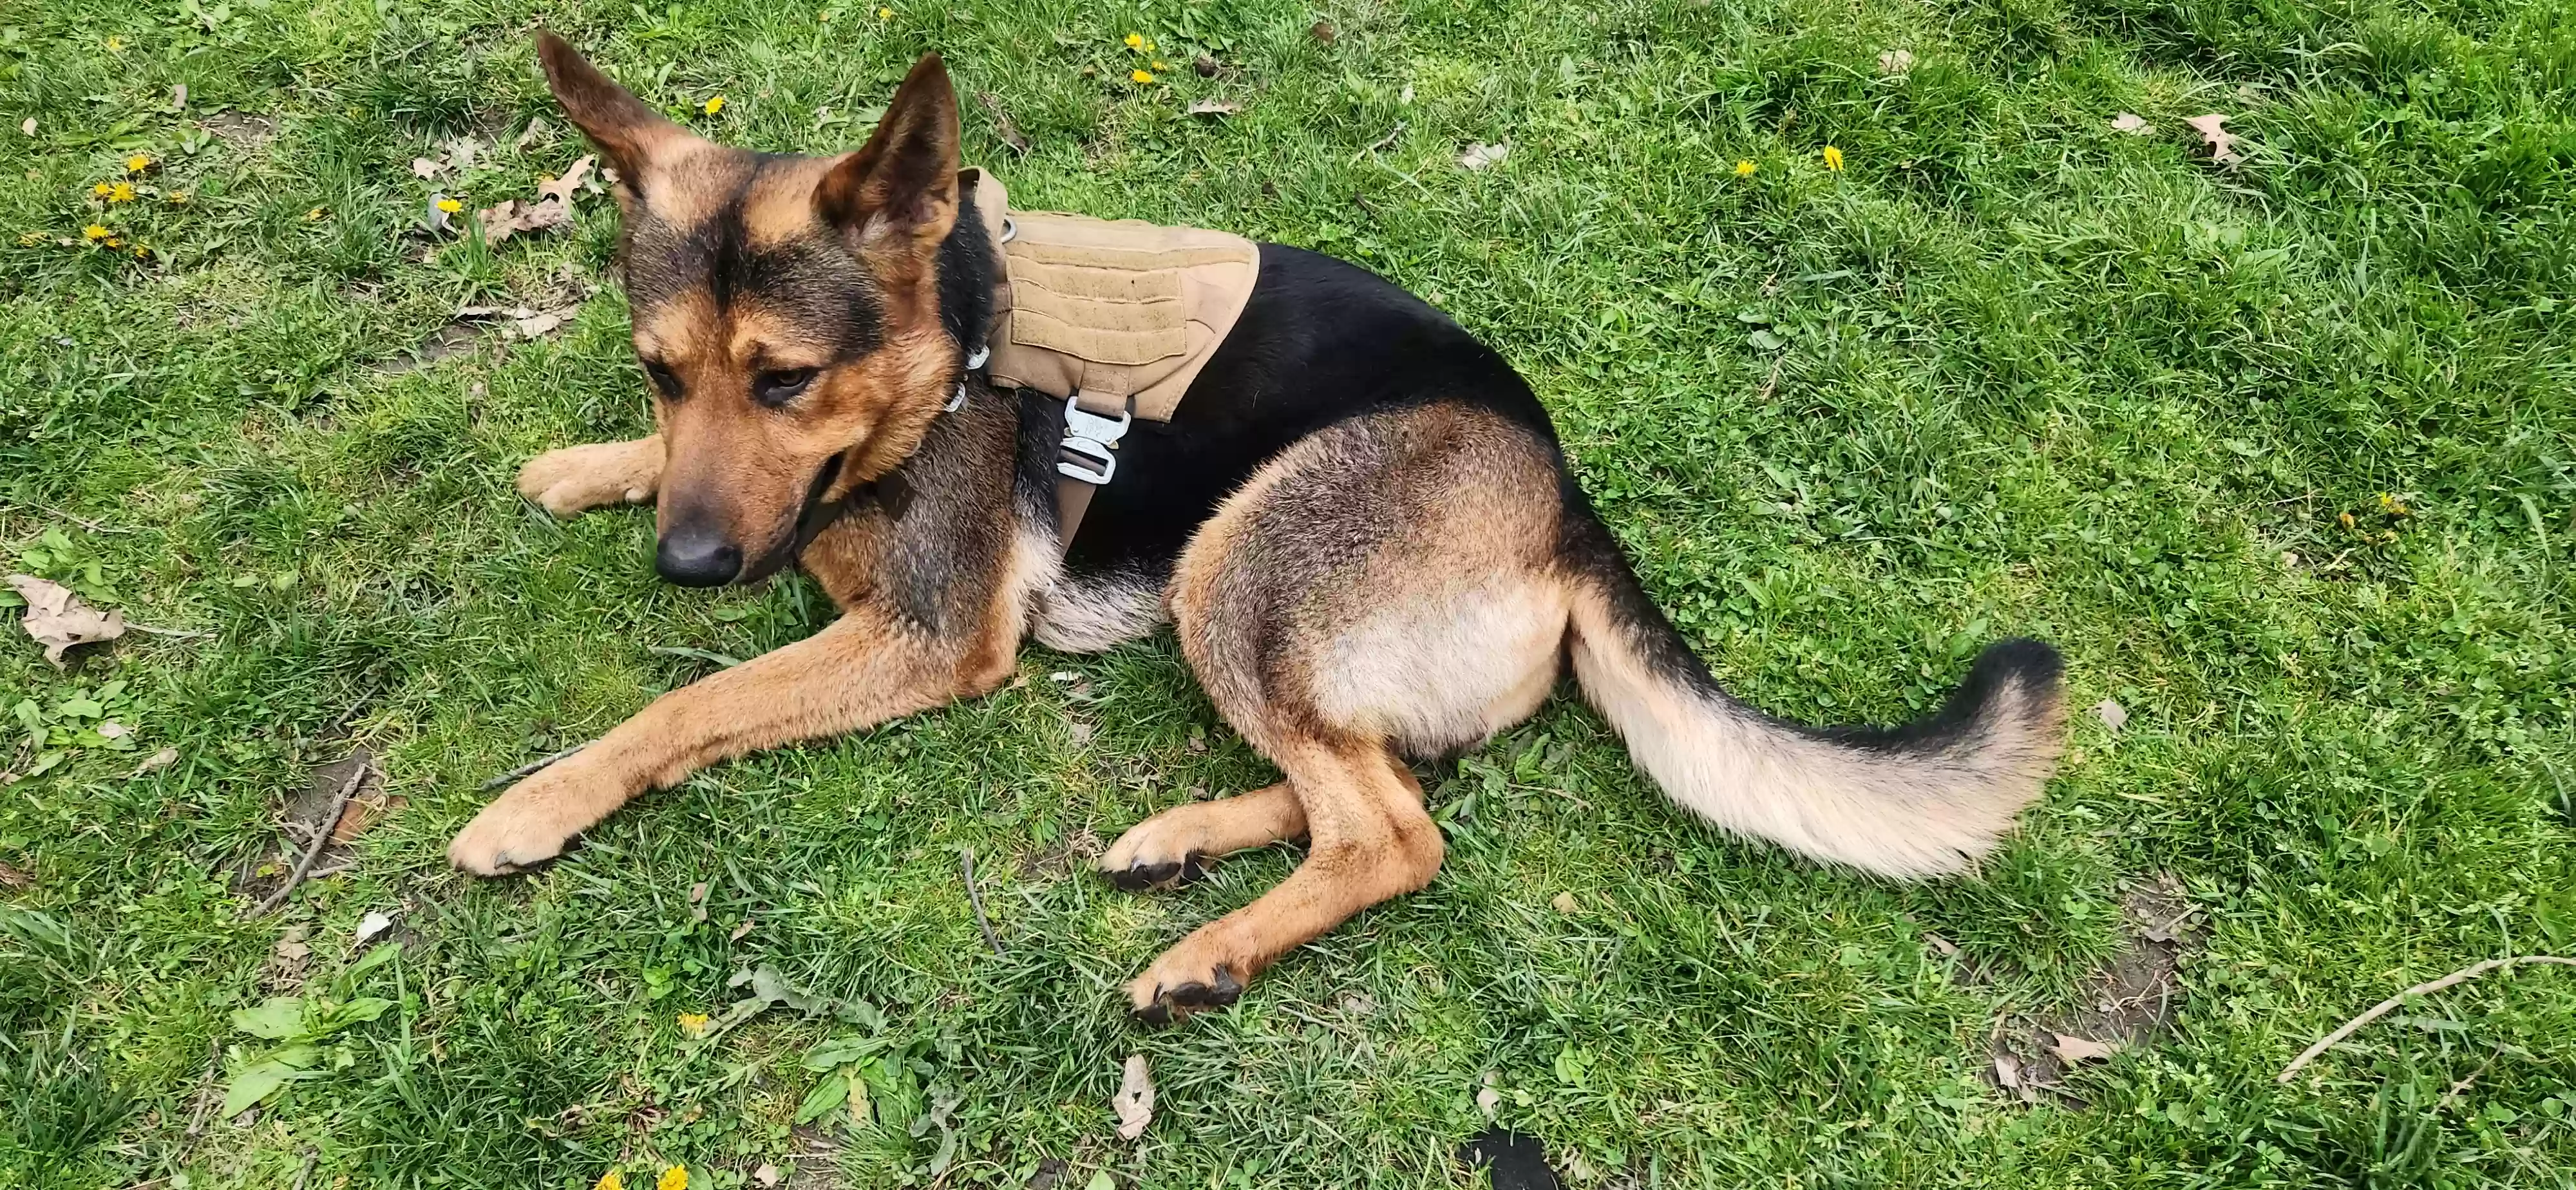 adoptable Dog in Saginaw,MI named Diesel